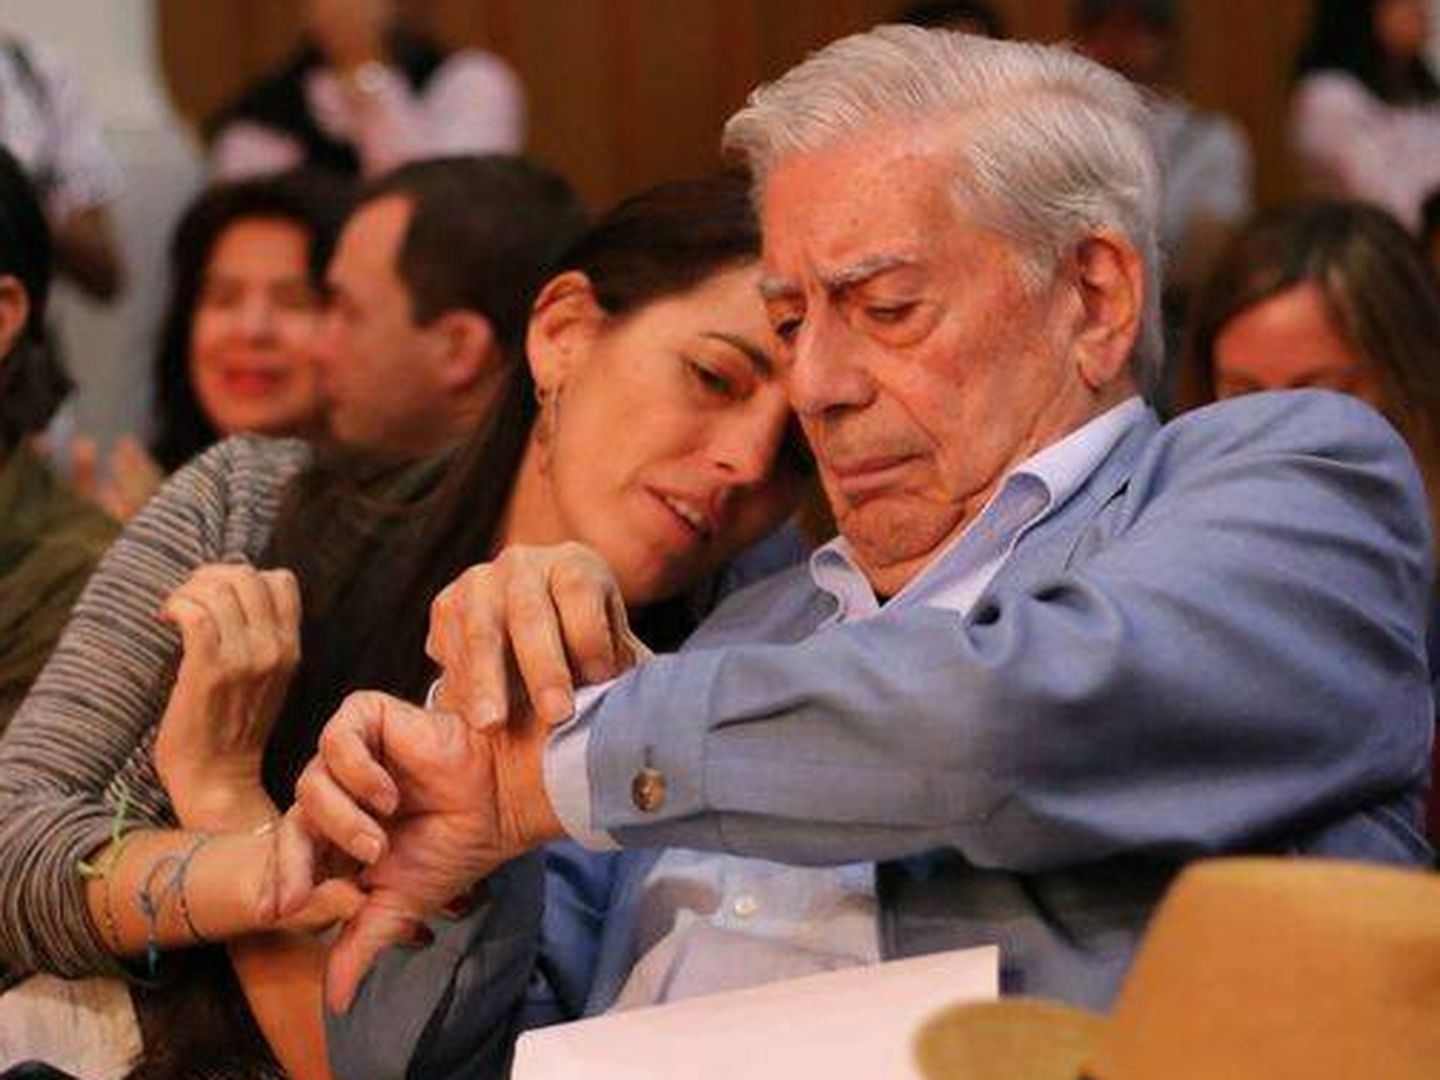  Morgana y Mario Vargas Llosa, en una imagen de archivo. (Gtres)